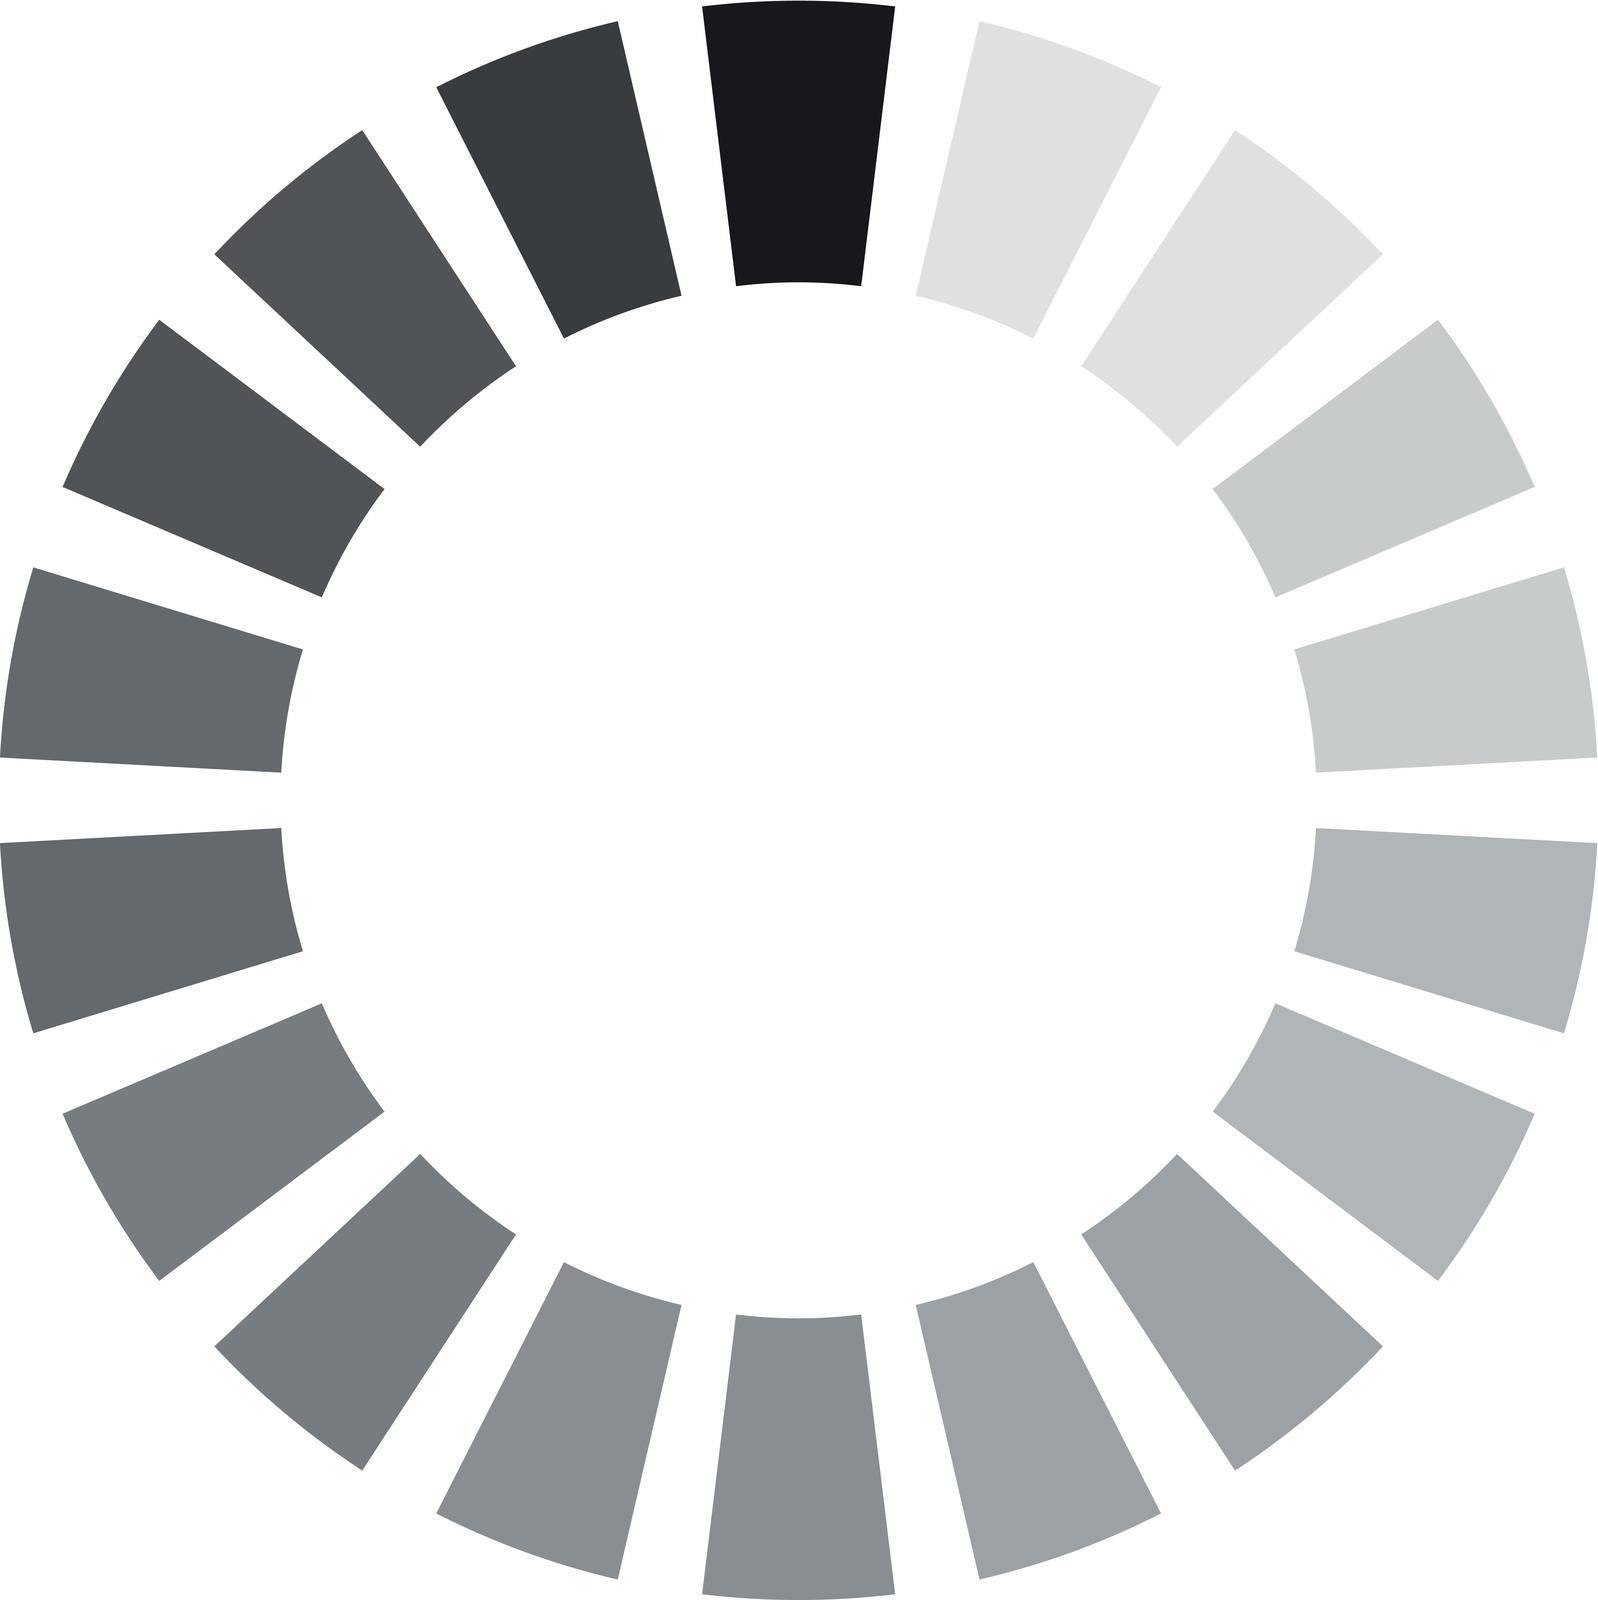 Round progress icon. Loading symbol. Upload sign isolated on white background